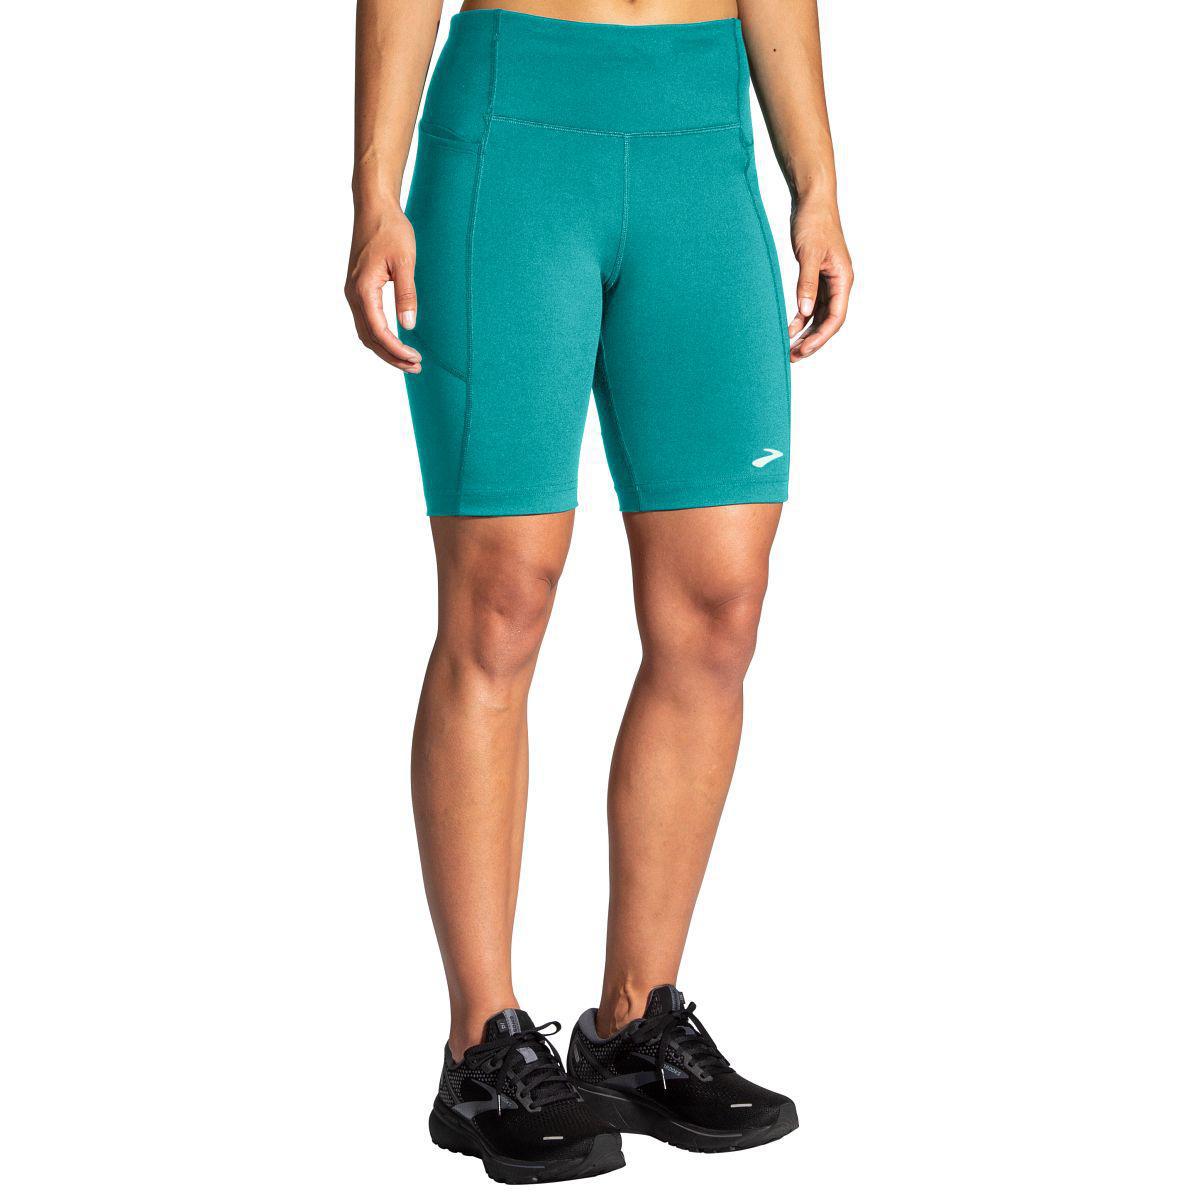 SHORT TIGHTS Running shorts - Men - Diadora Online Store FI